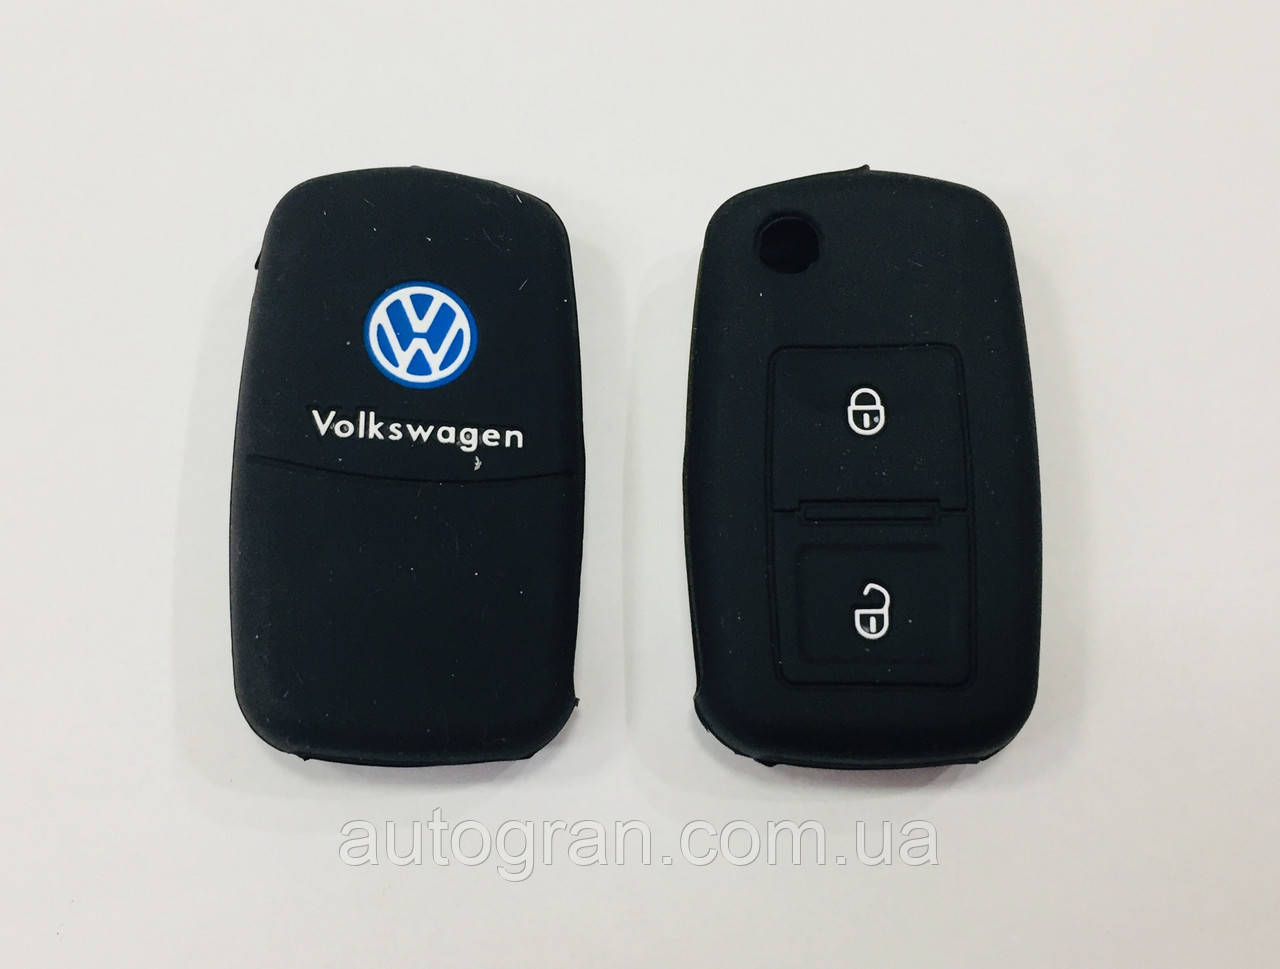 Силіконовий чохол на ключ 2 кнопки Volkswagen чорний